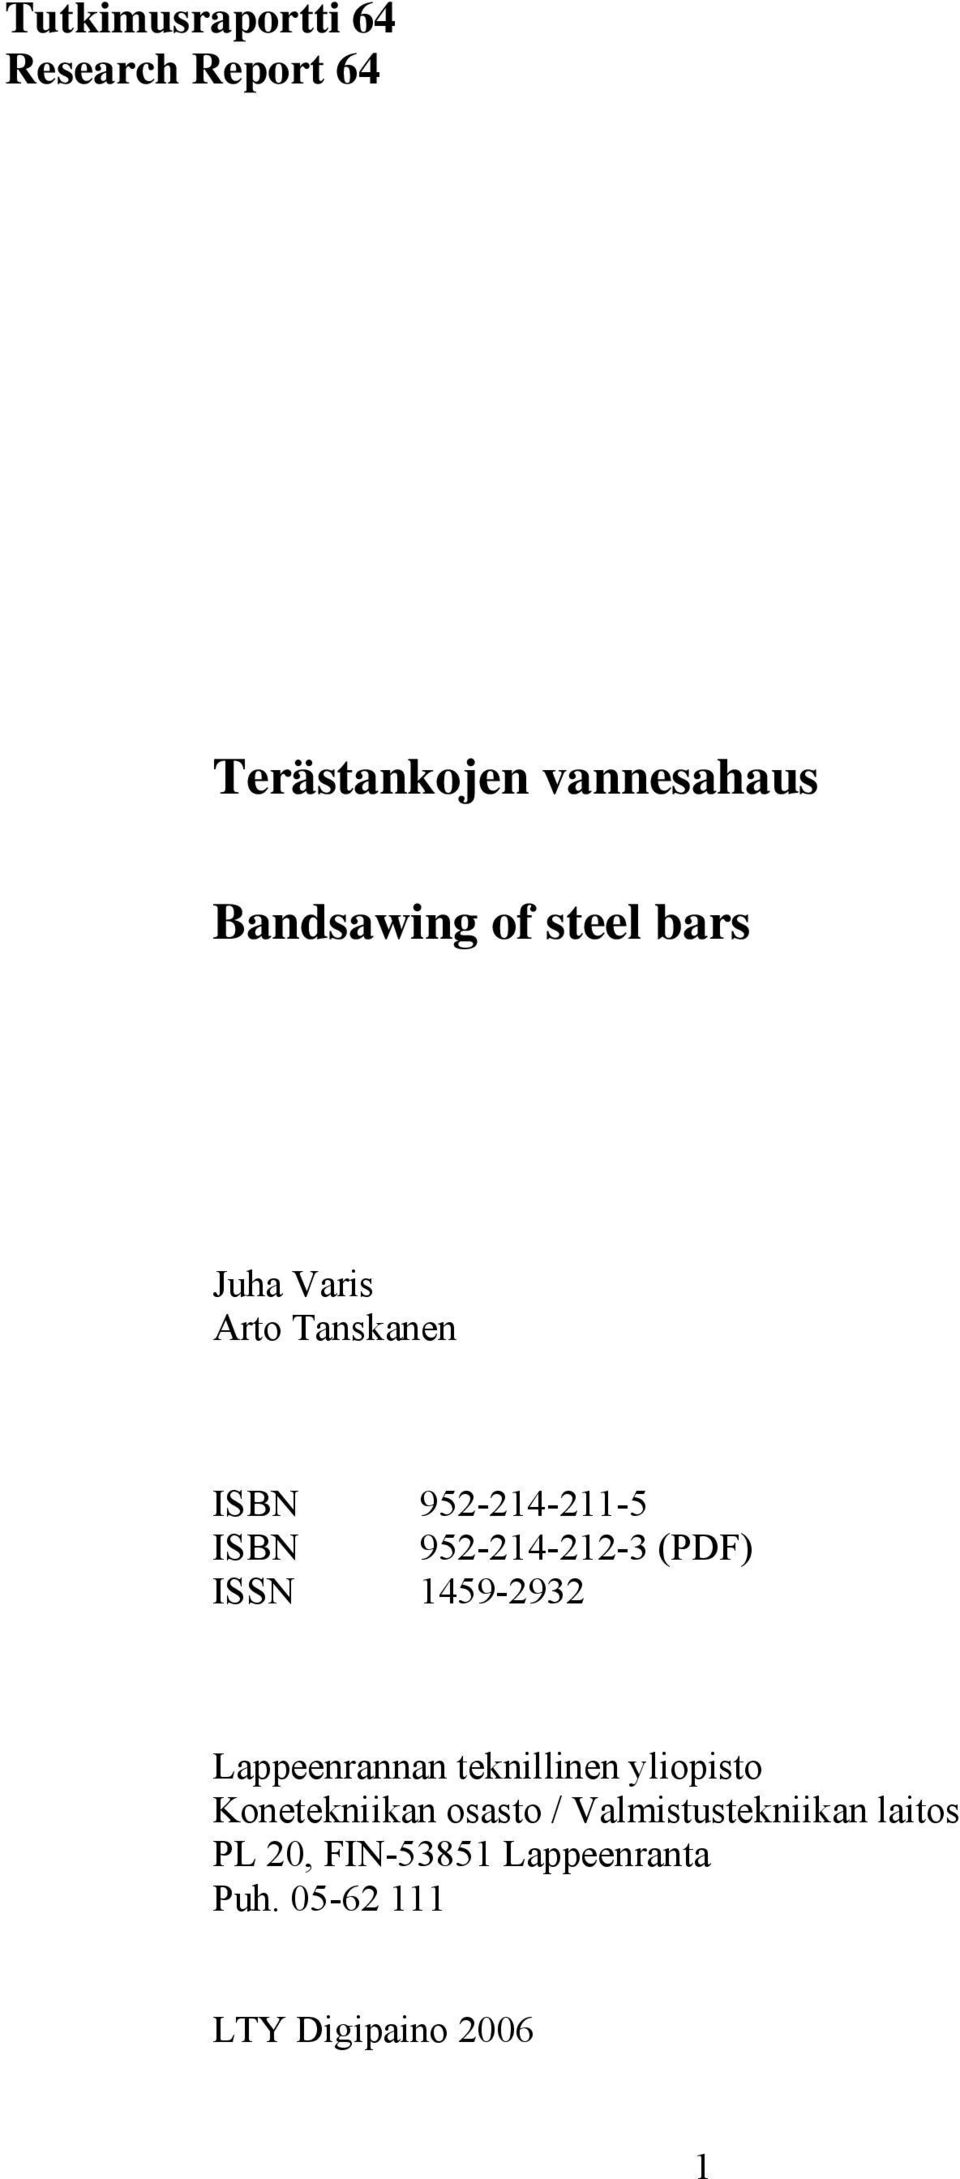 ISSN 1459-2932 Lappeenrannan teknillinen yliopisto Konetekniikan osasto /